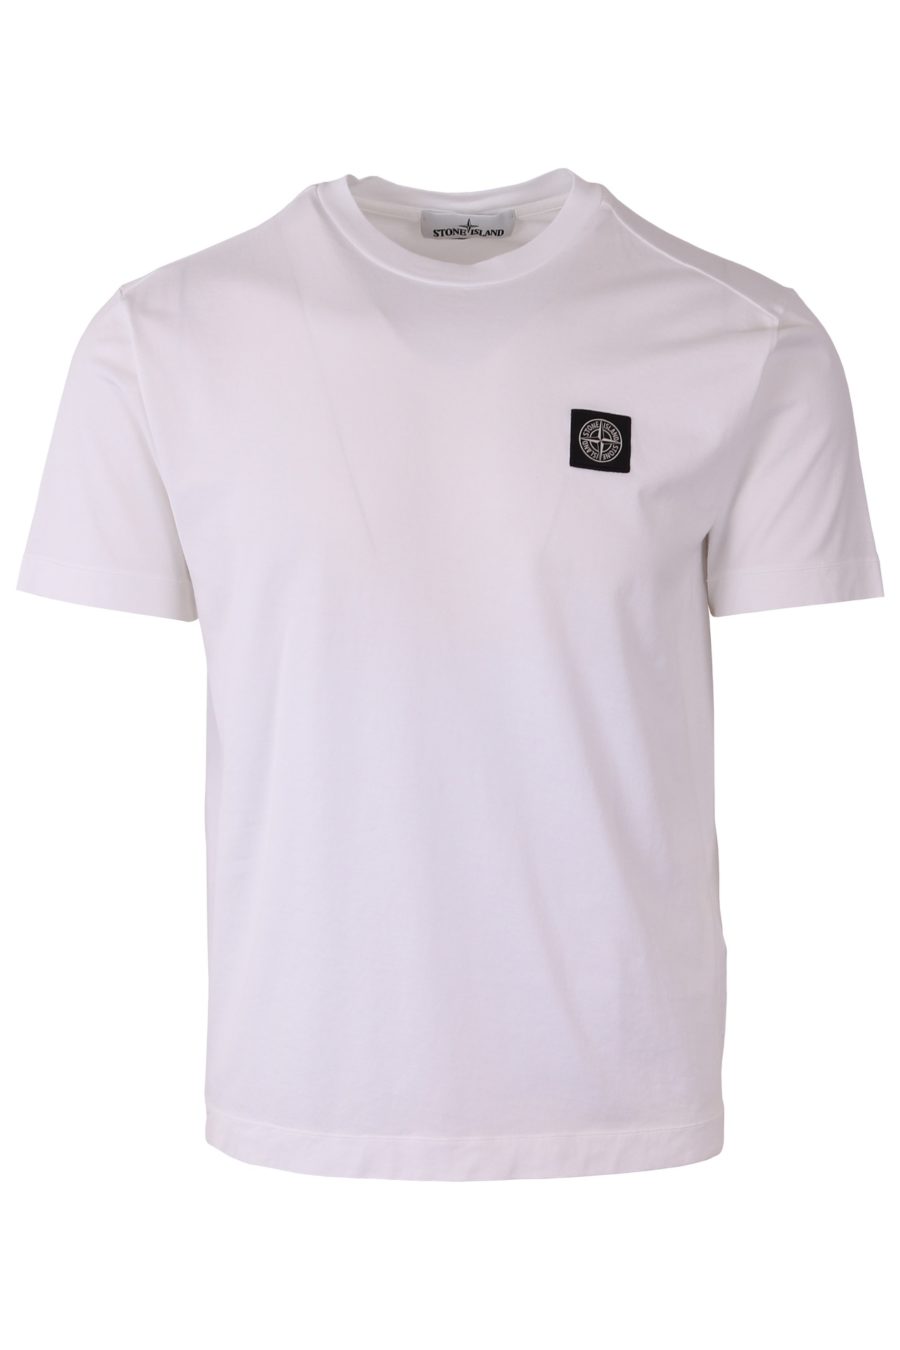 Camiseta Stone Island blanca con logo parche - 2bcf50177a7f3e0c69ce41f1de8ed9d03bc69dce